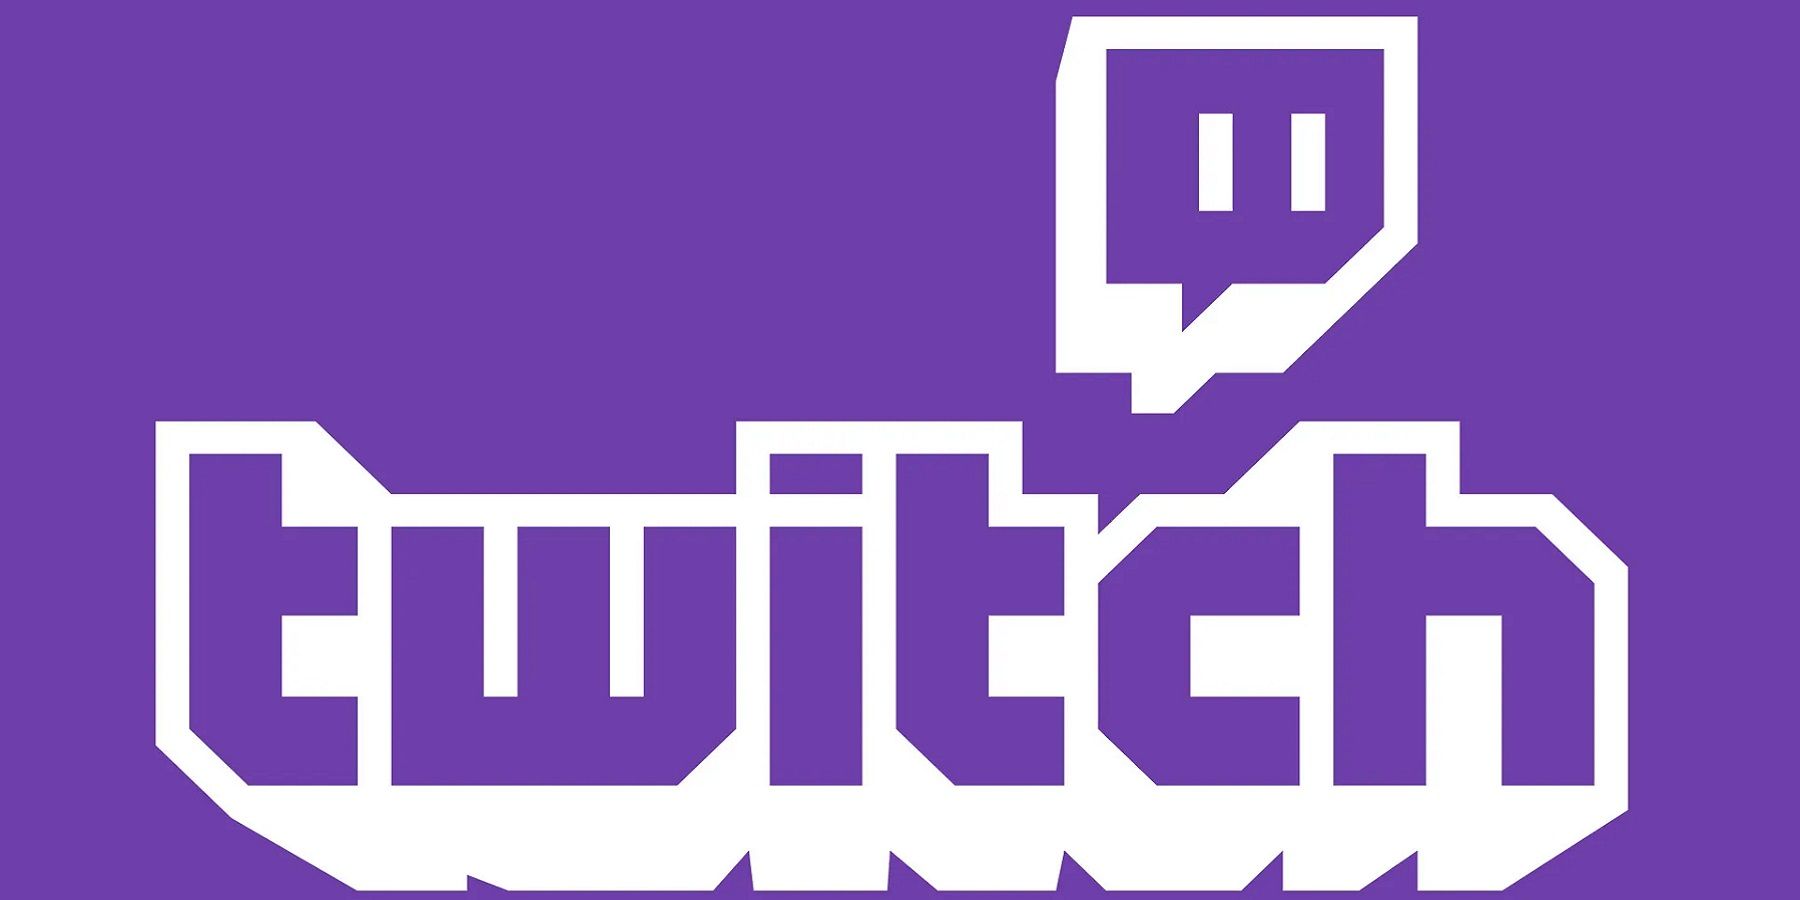 Логотип Twitch на ярко-фиолетовом фоне.